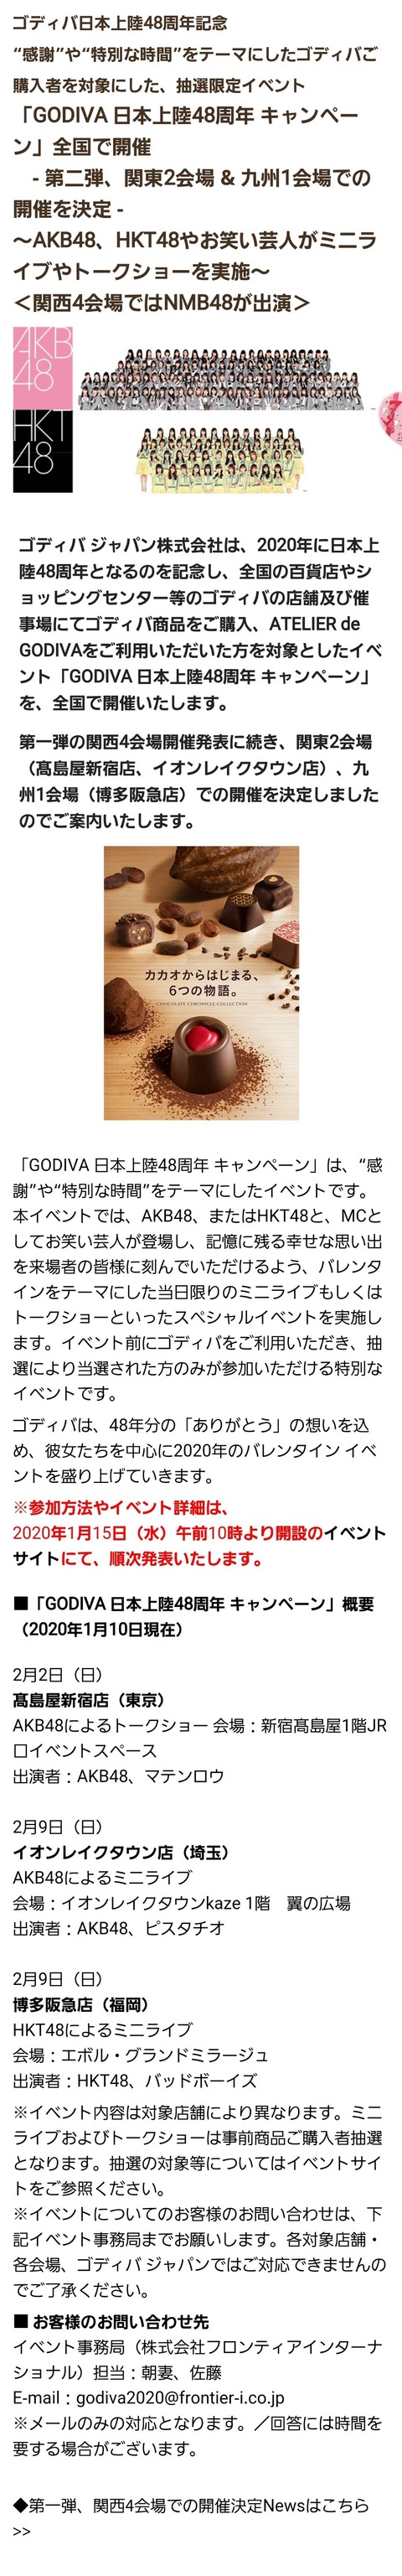 【朗報】GODIVA日本上陸48周年キャンペーン、AKB48・HKT48のミニライブ、トークショー開催